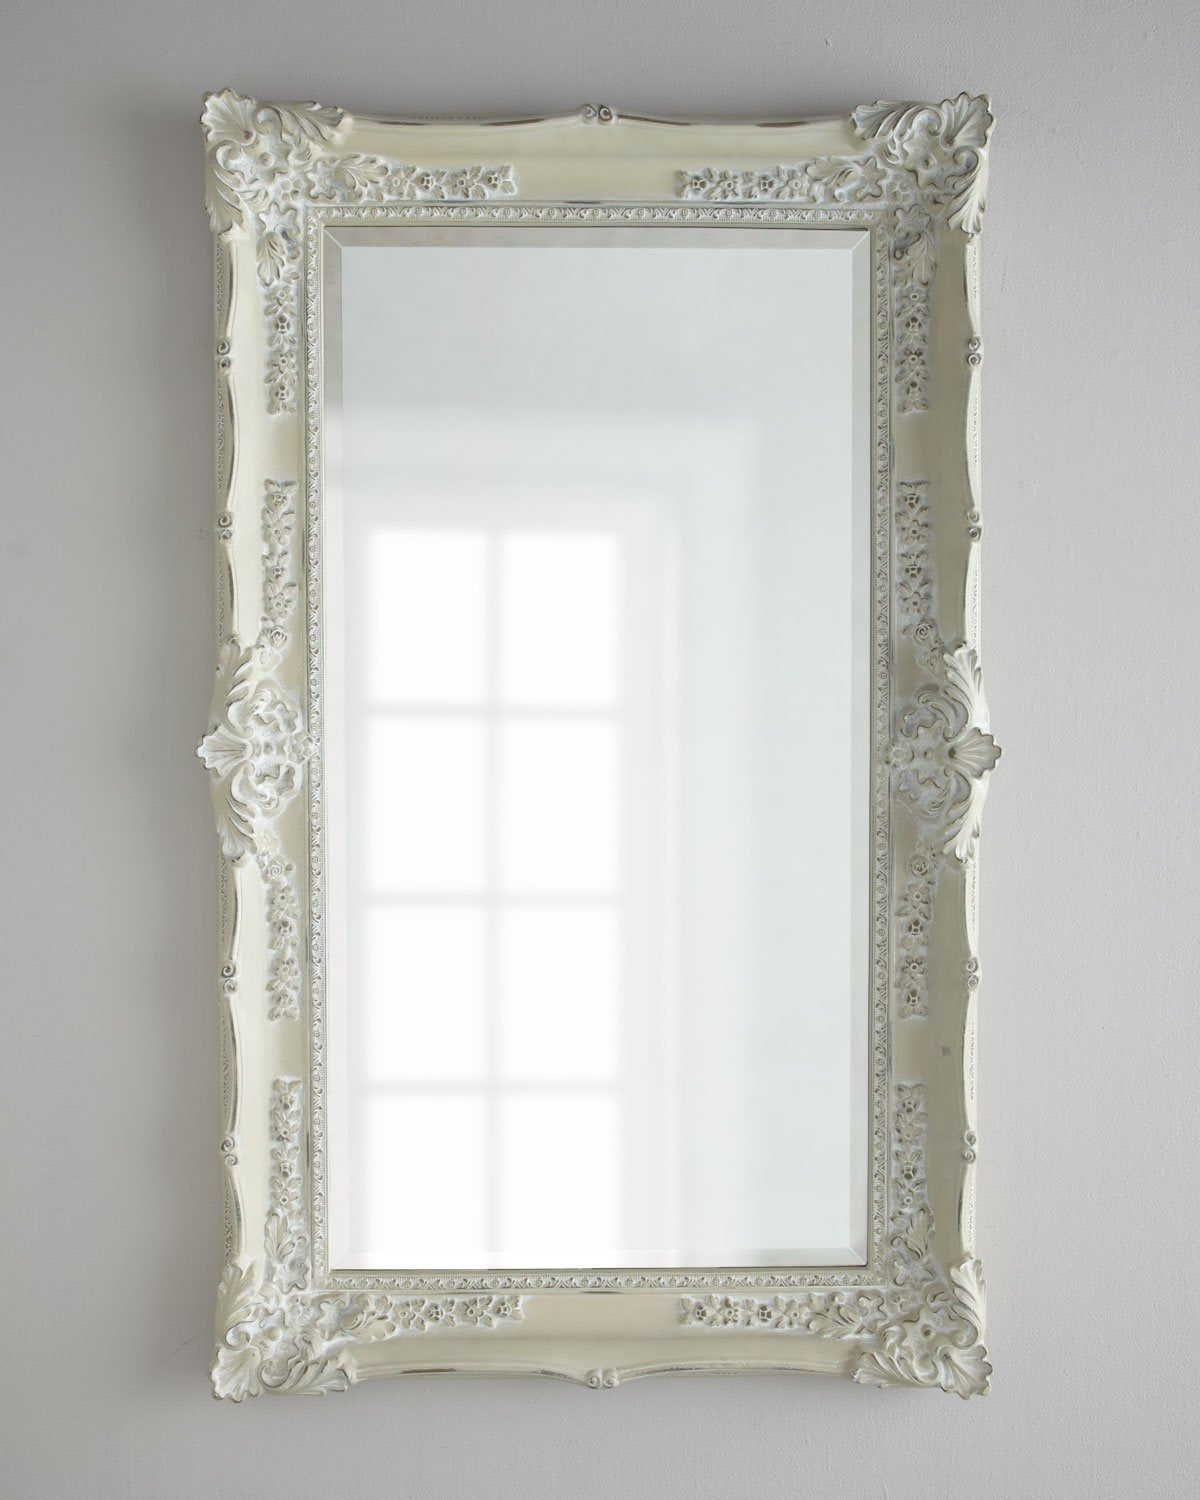 Напольное зеркало "Ла Манш" в полный рост с рамой белого цвета во французском стиле кантри